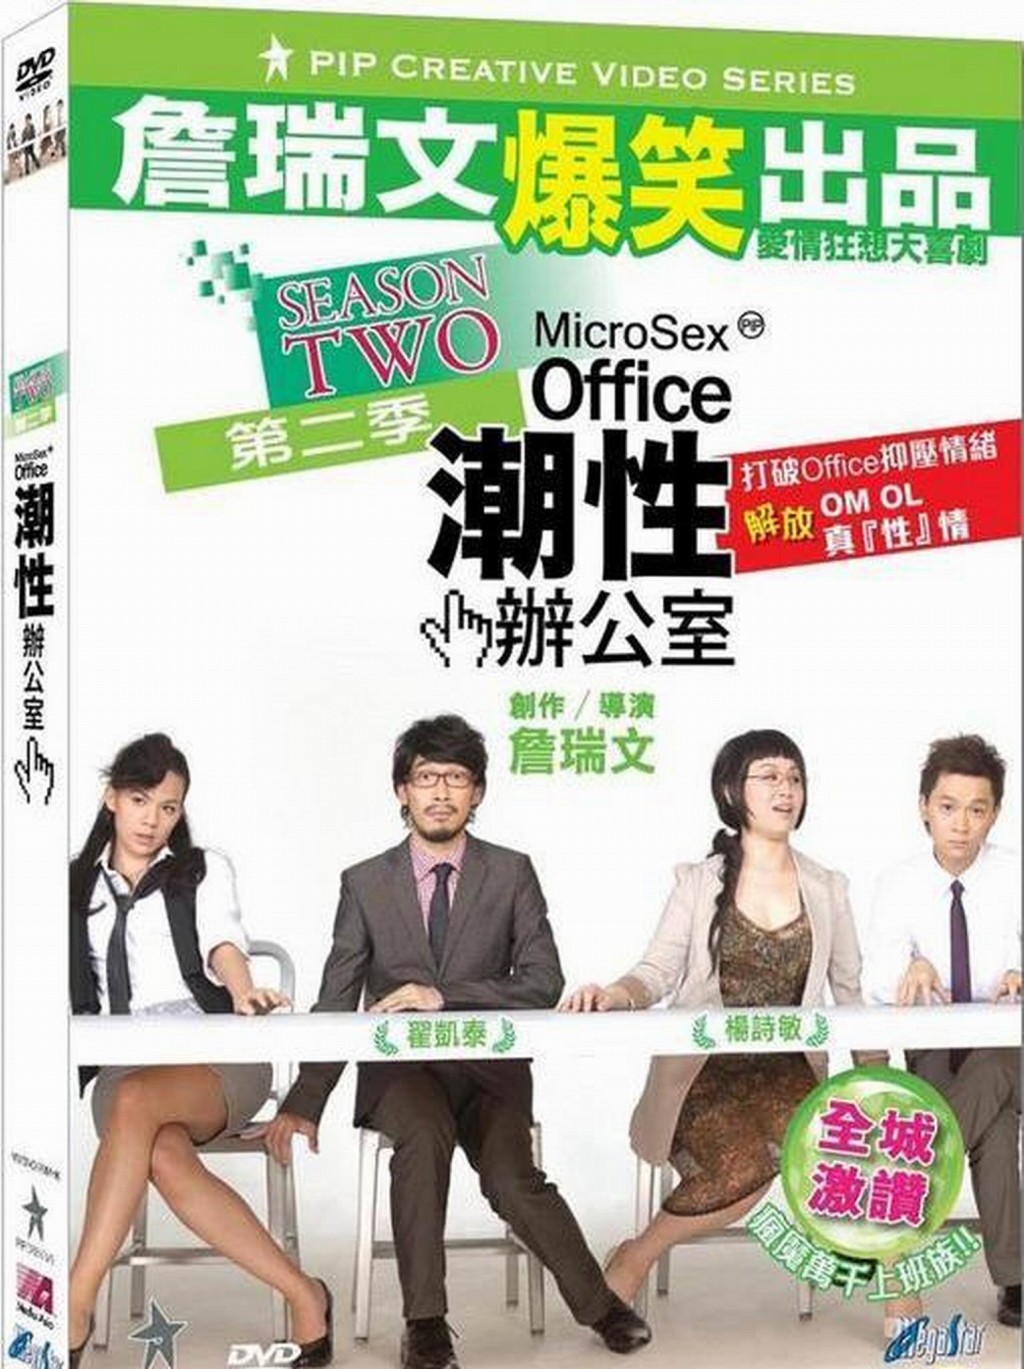 邓智坚（右一）与虾头杨诗敏、泰臣翟凯泰演出詹瑞文导演的《潮性办公室》。